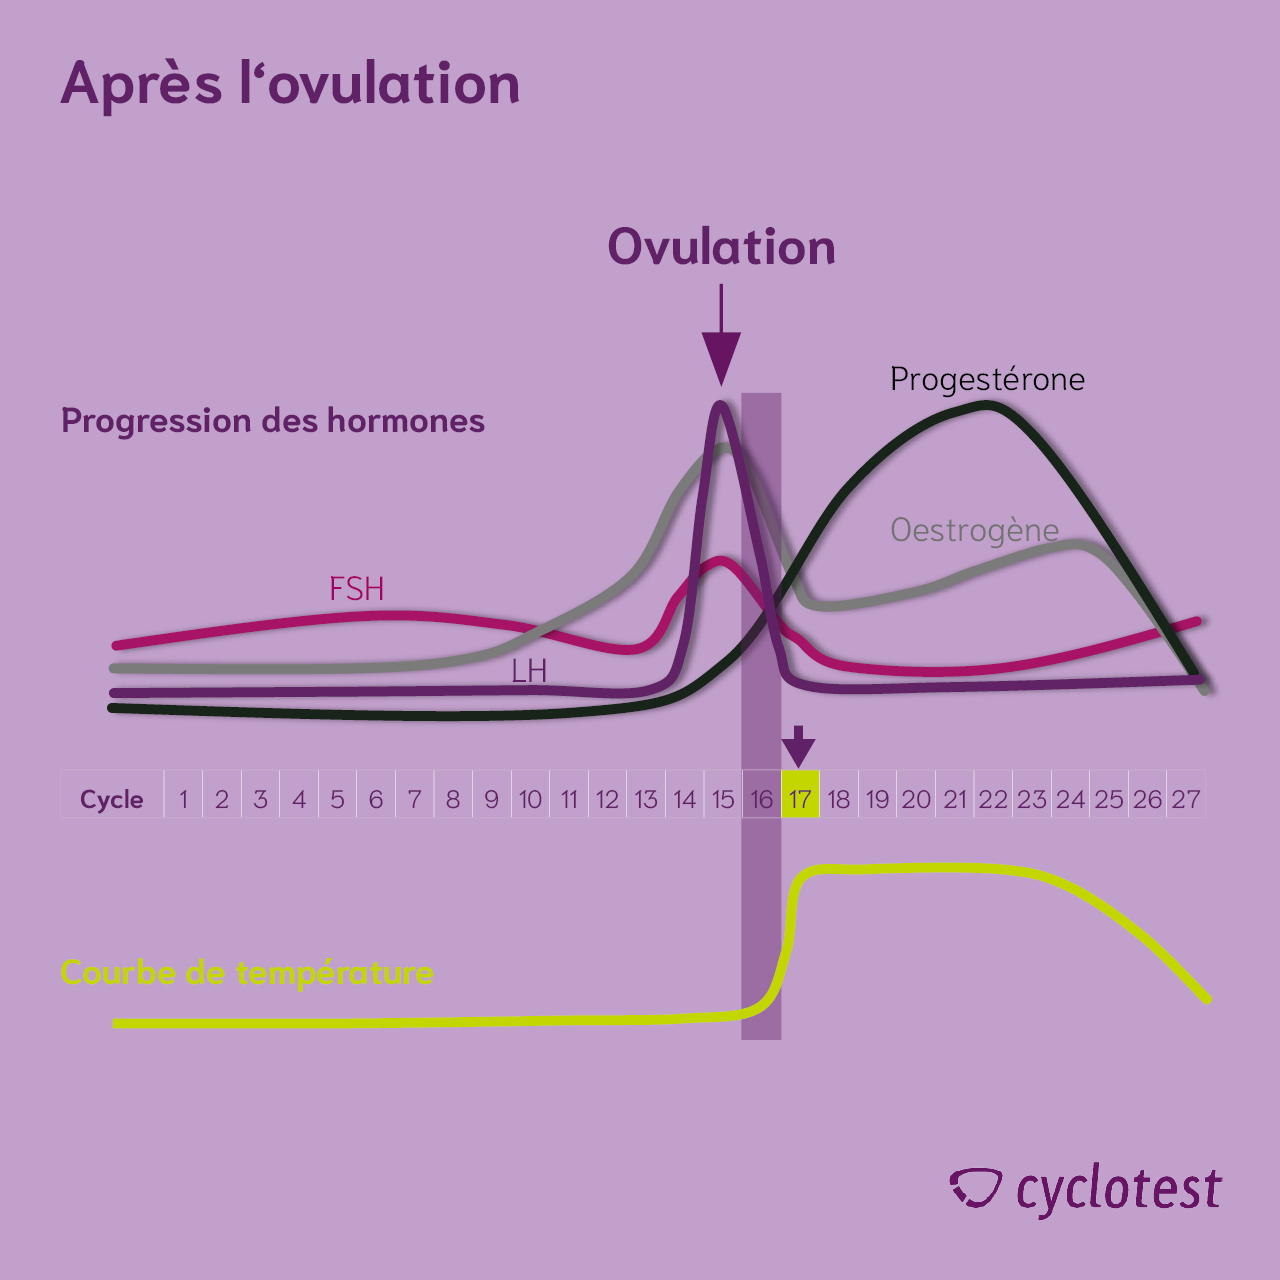 La progression hormonale dans la seconde moitié du cycle | Graphique : © cyclotest